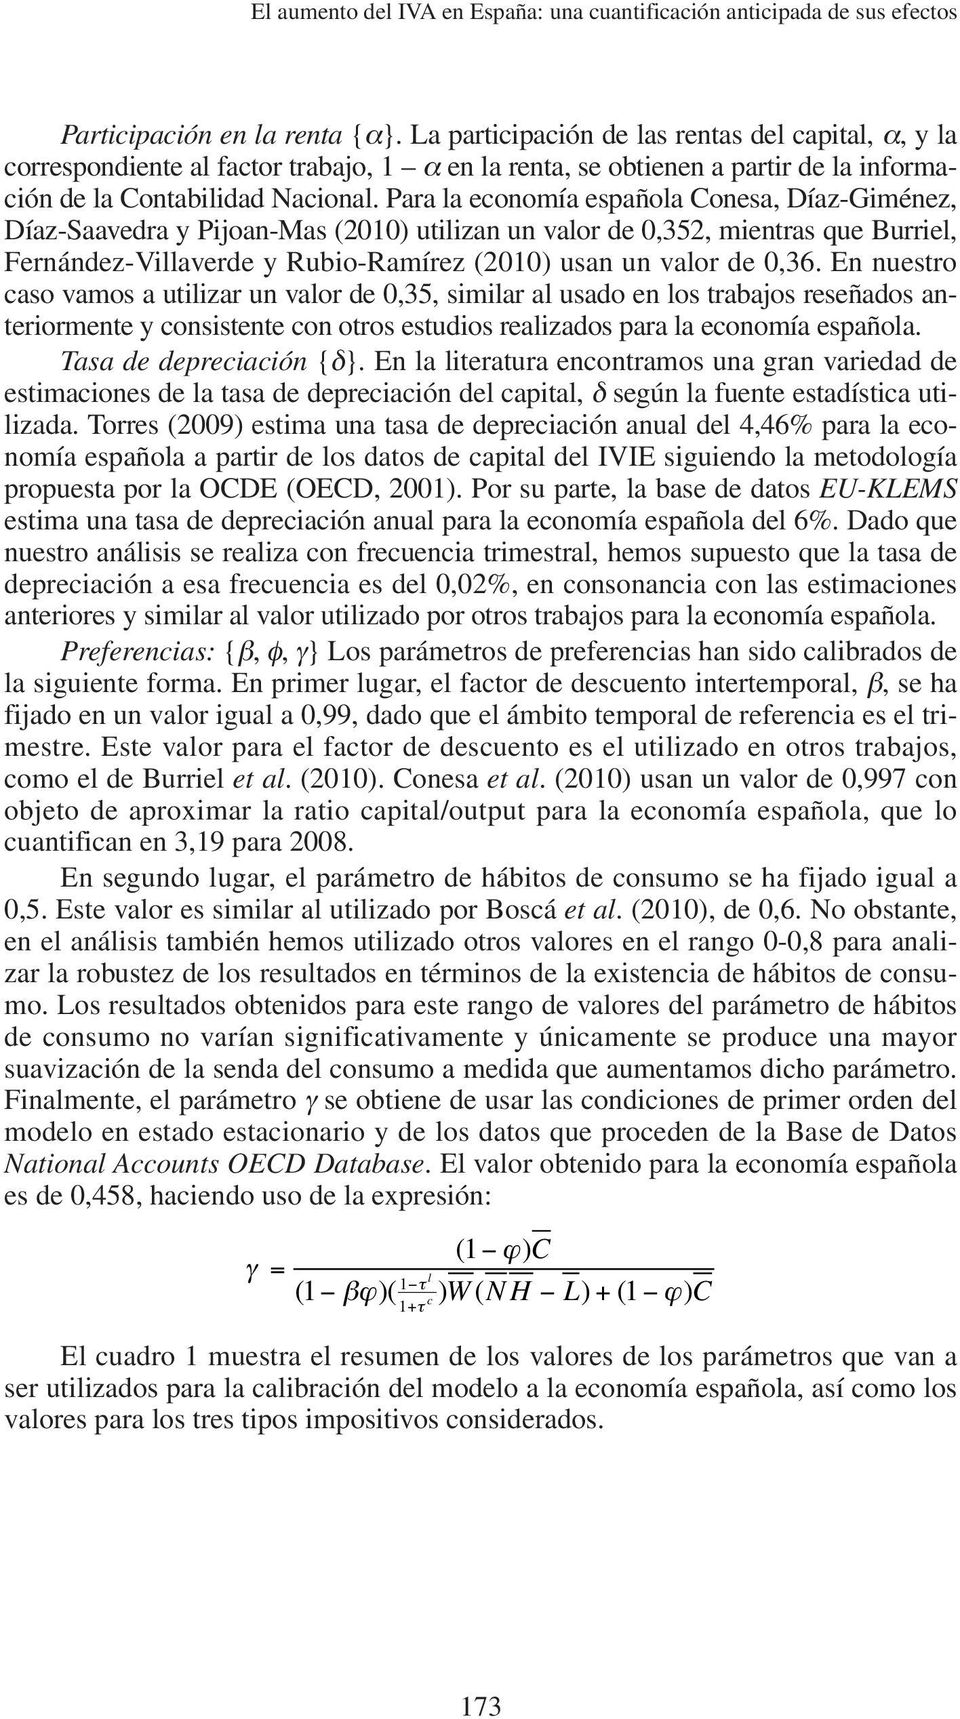 Para la economía española Conesa, Díaz-Giménez, Díaz-Saavedra y Pijoan-Mas (2010) uilizan un valor de 0,352, mienras que Burriel, Fernández-Villaverde y Rubio-Ramírez (2010) usan un valor de 0,36.